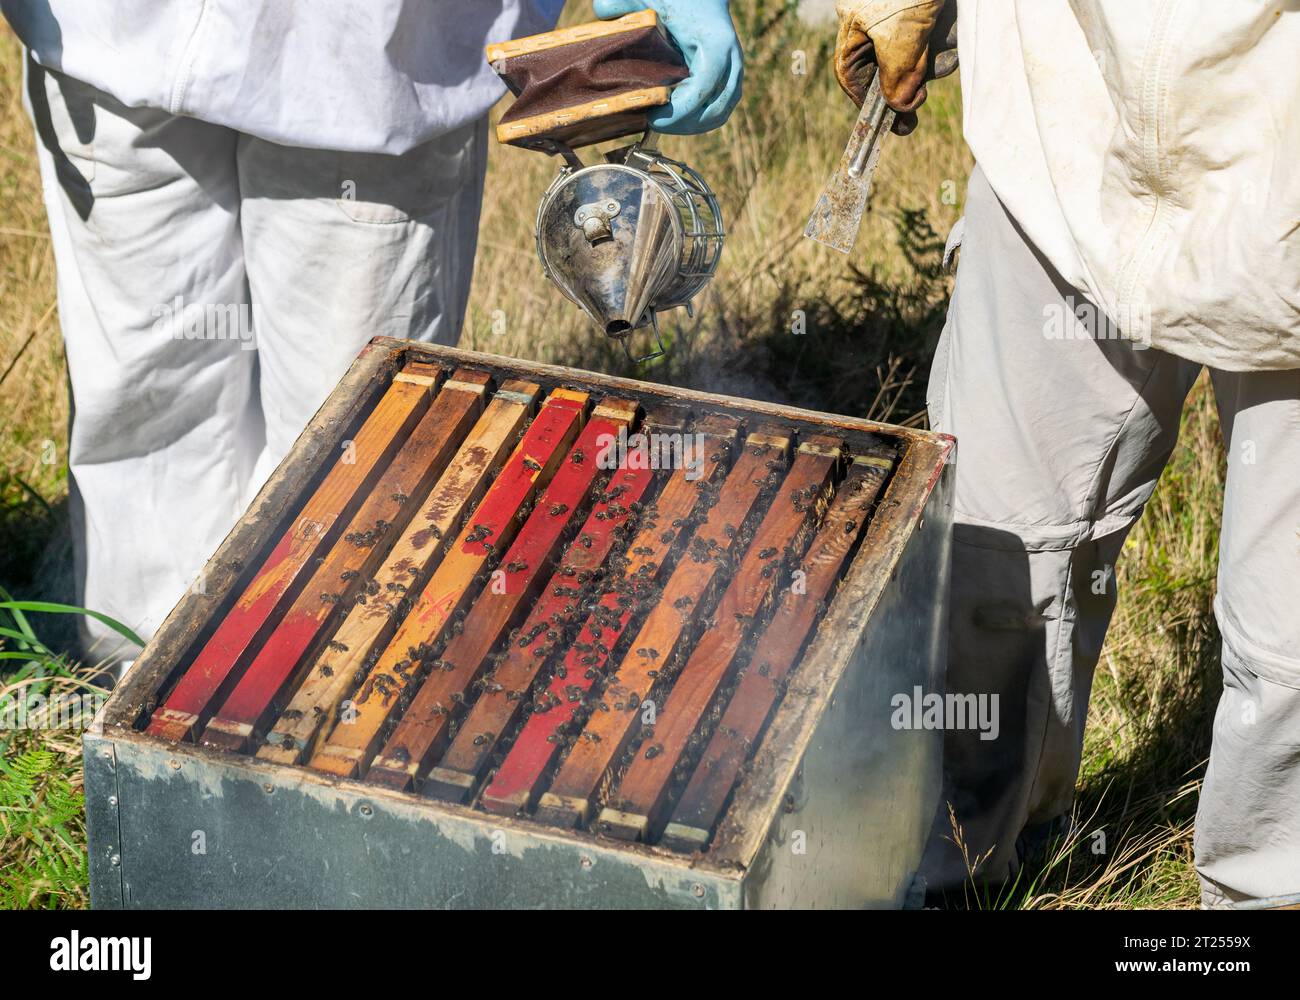 Un apiculteur souffle de la fumée dans une ruche avant qu'un autre apiculteur n'extrait les nids d'abeilles Banque D'Images